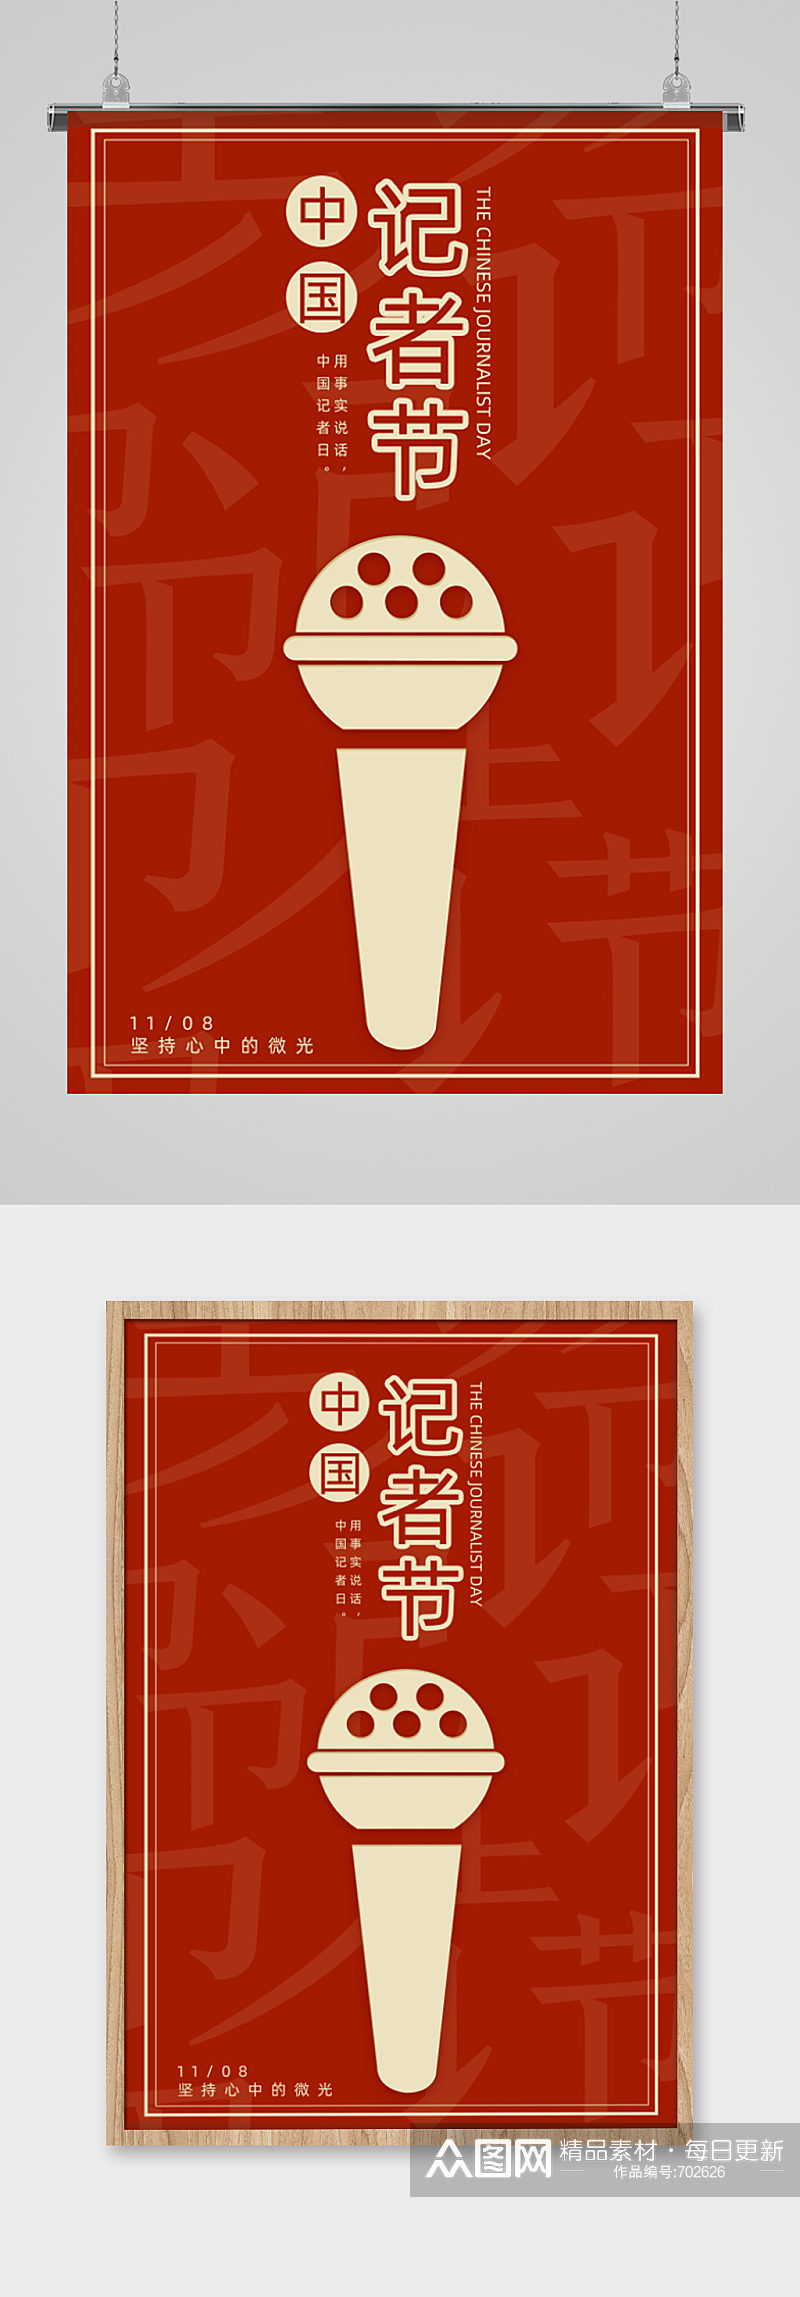 中国记者日创意宣传海报素材